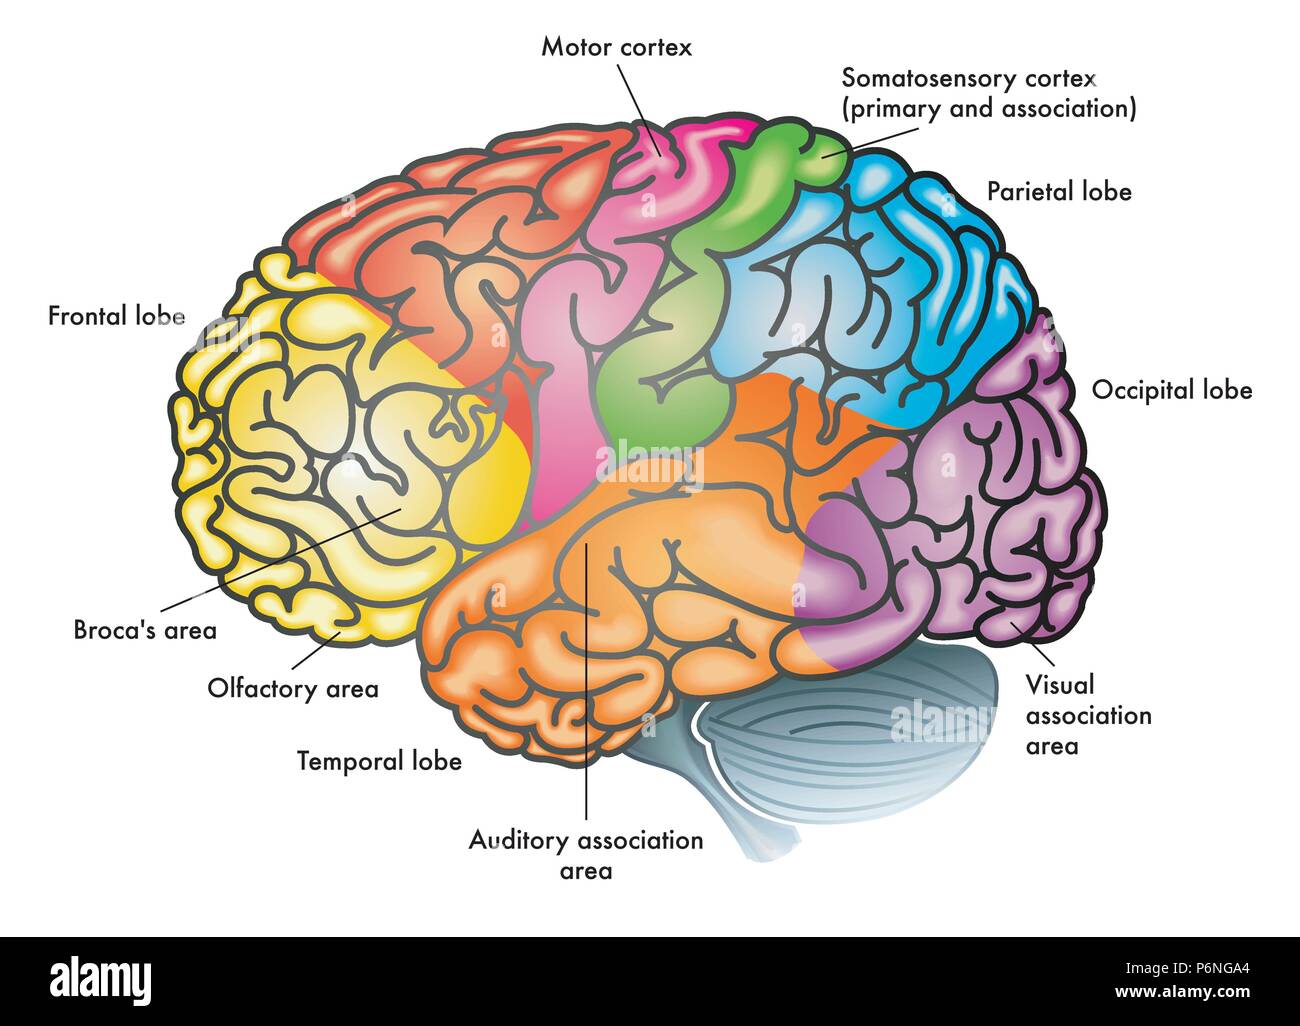 Vector medical illustrazione colorata di un cervello umano con diverse aree funzionali evidenziati con colori diversi Illustrazione Vettoriale